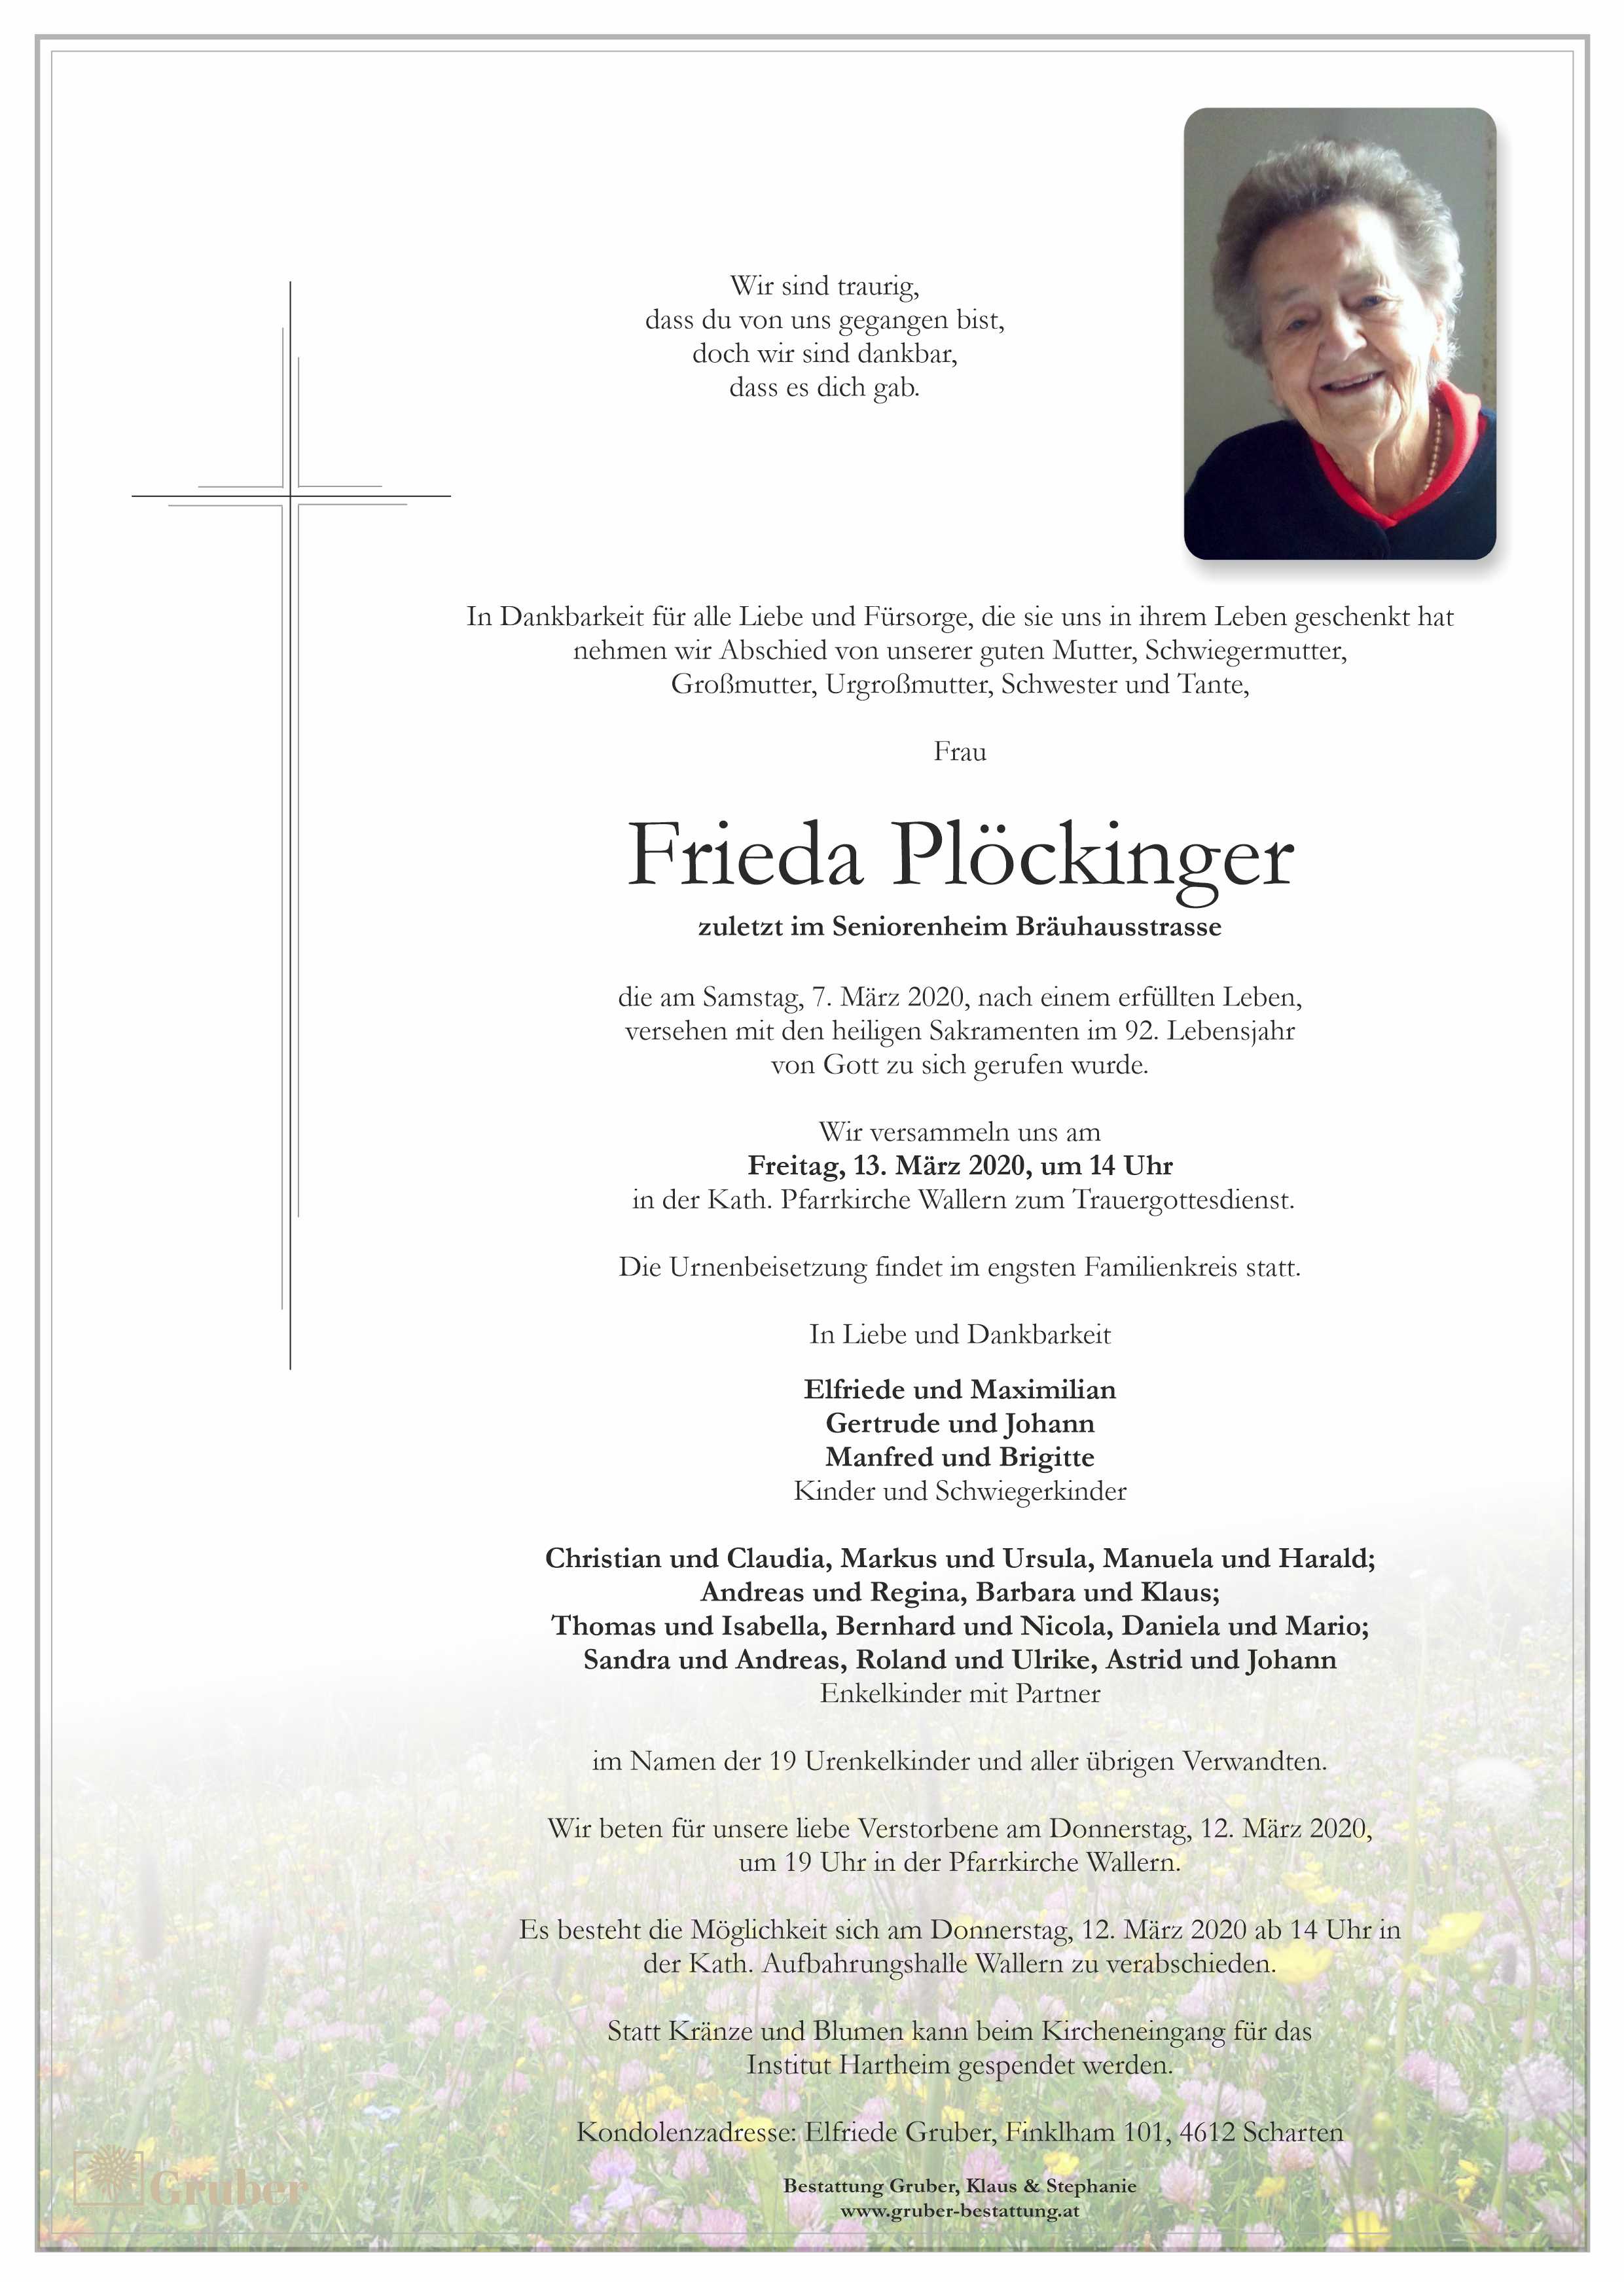 Frieda Plöckinger (Wallern)